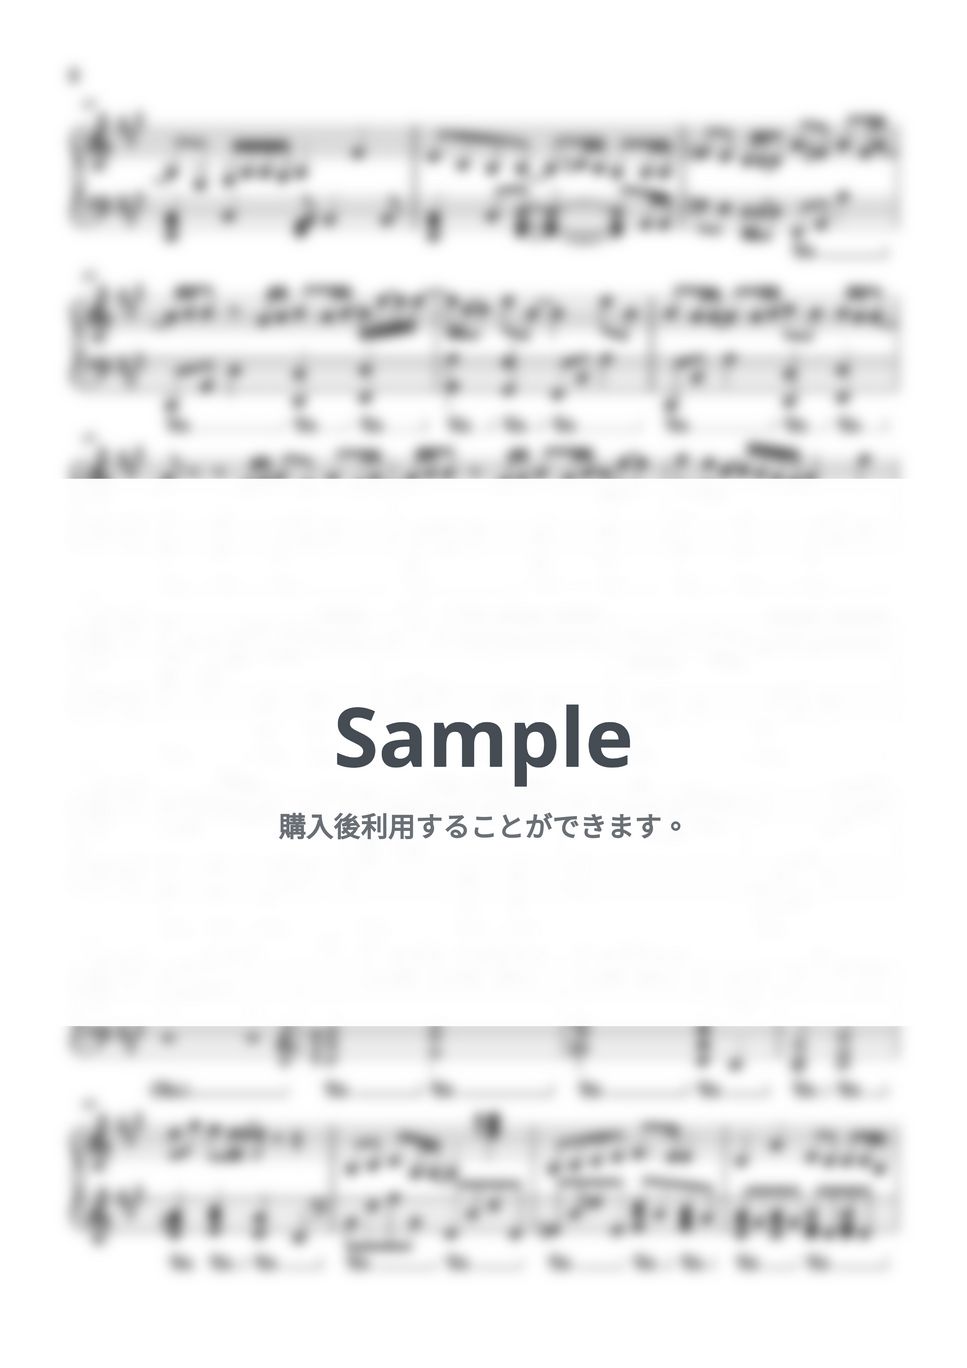 すとぷり - マブシガリヤ (ピアノソロ譜 / ピアノアレンジ) by 萌や氏